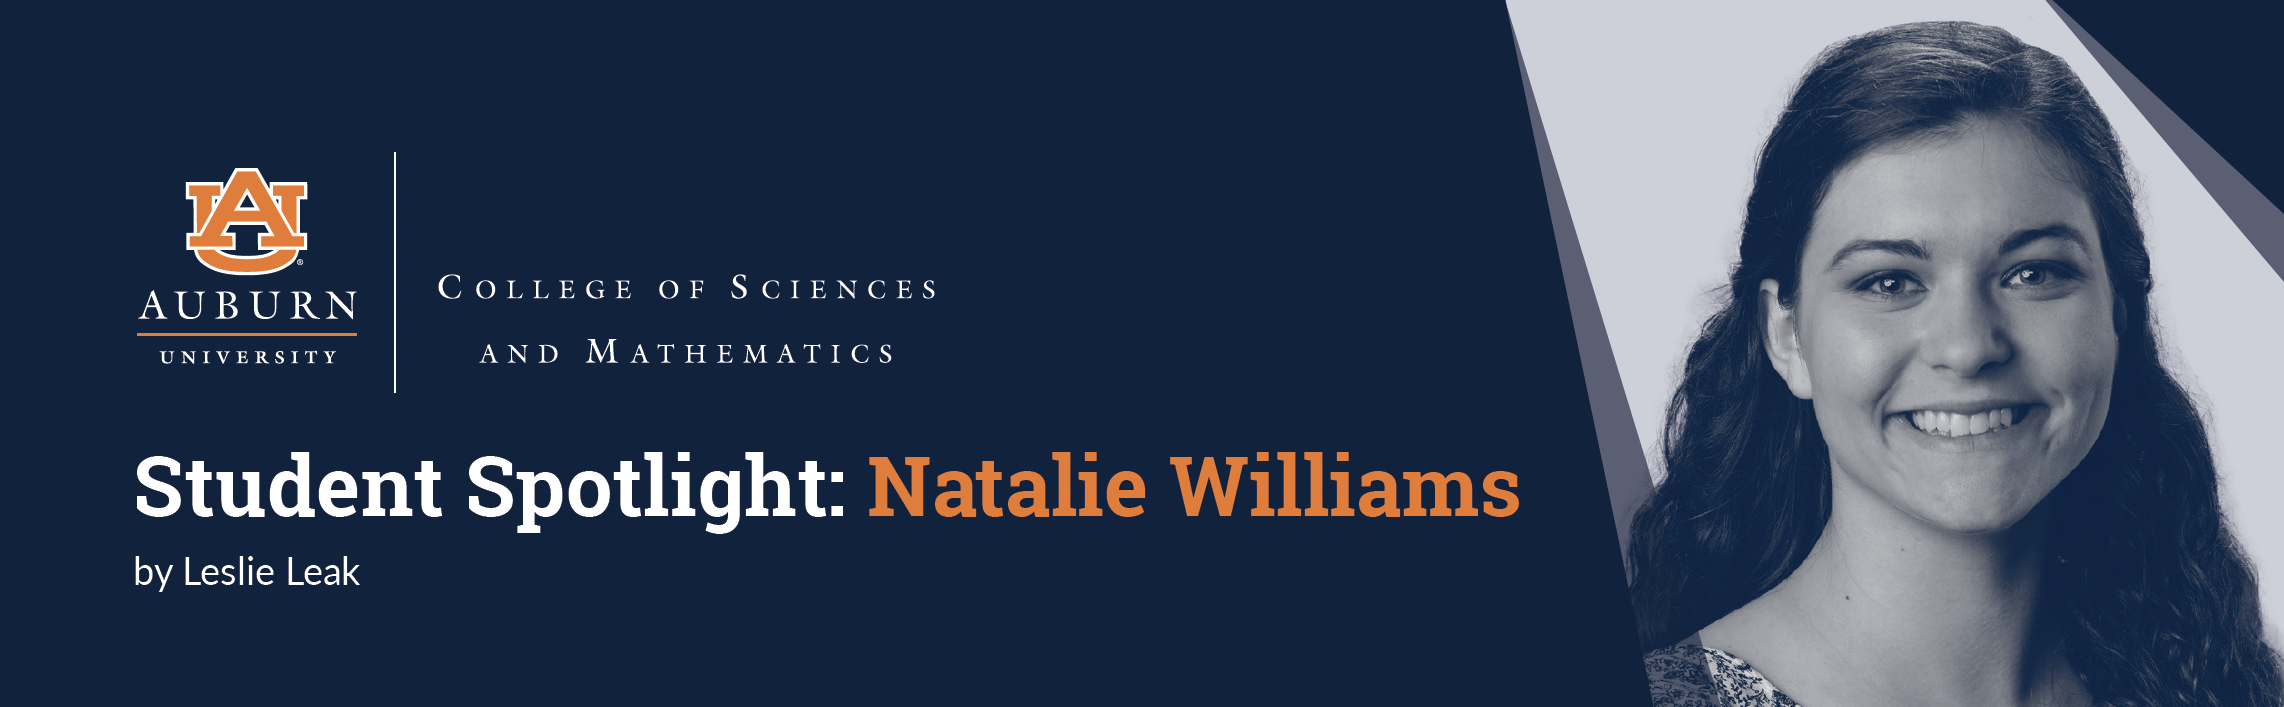 Natalie Williams